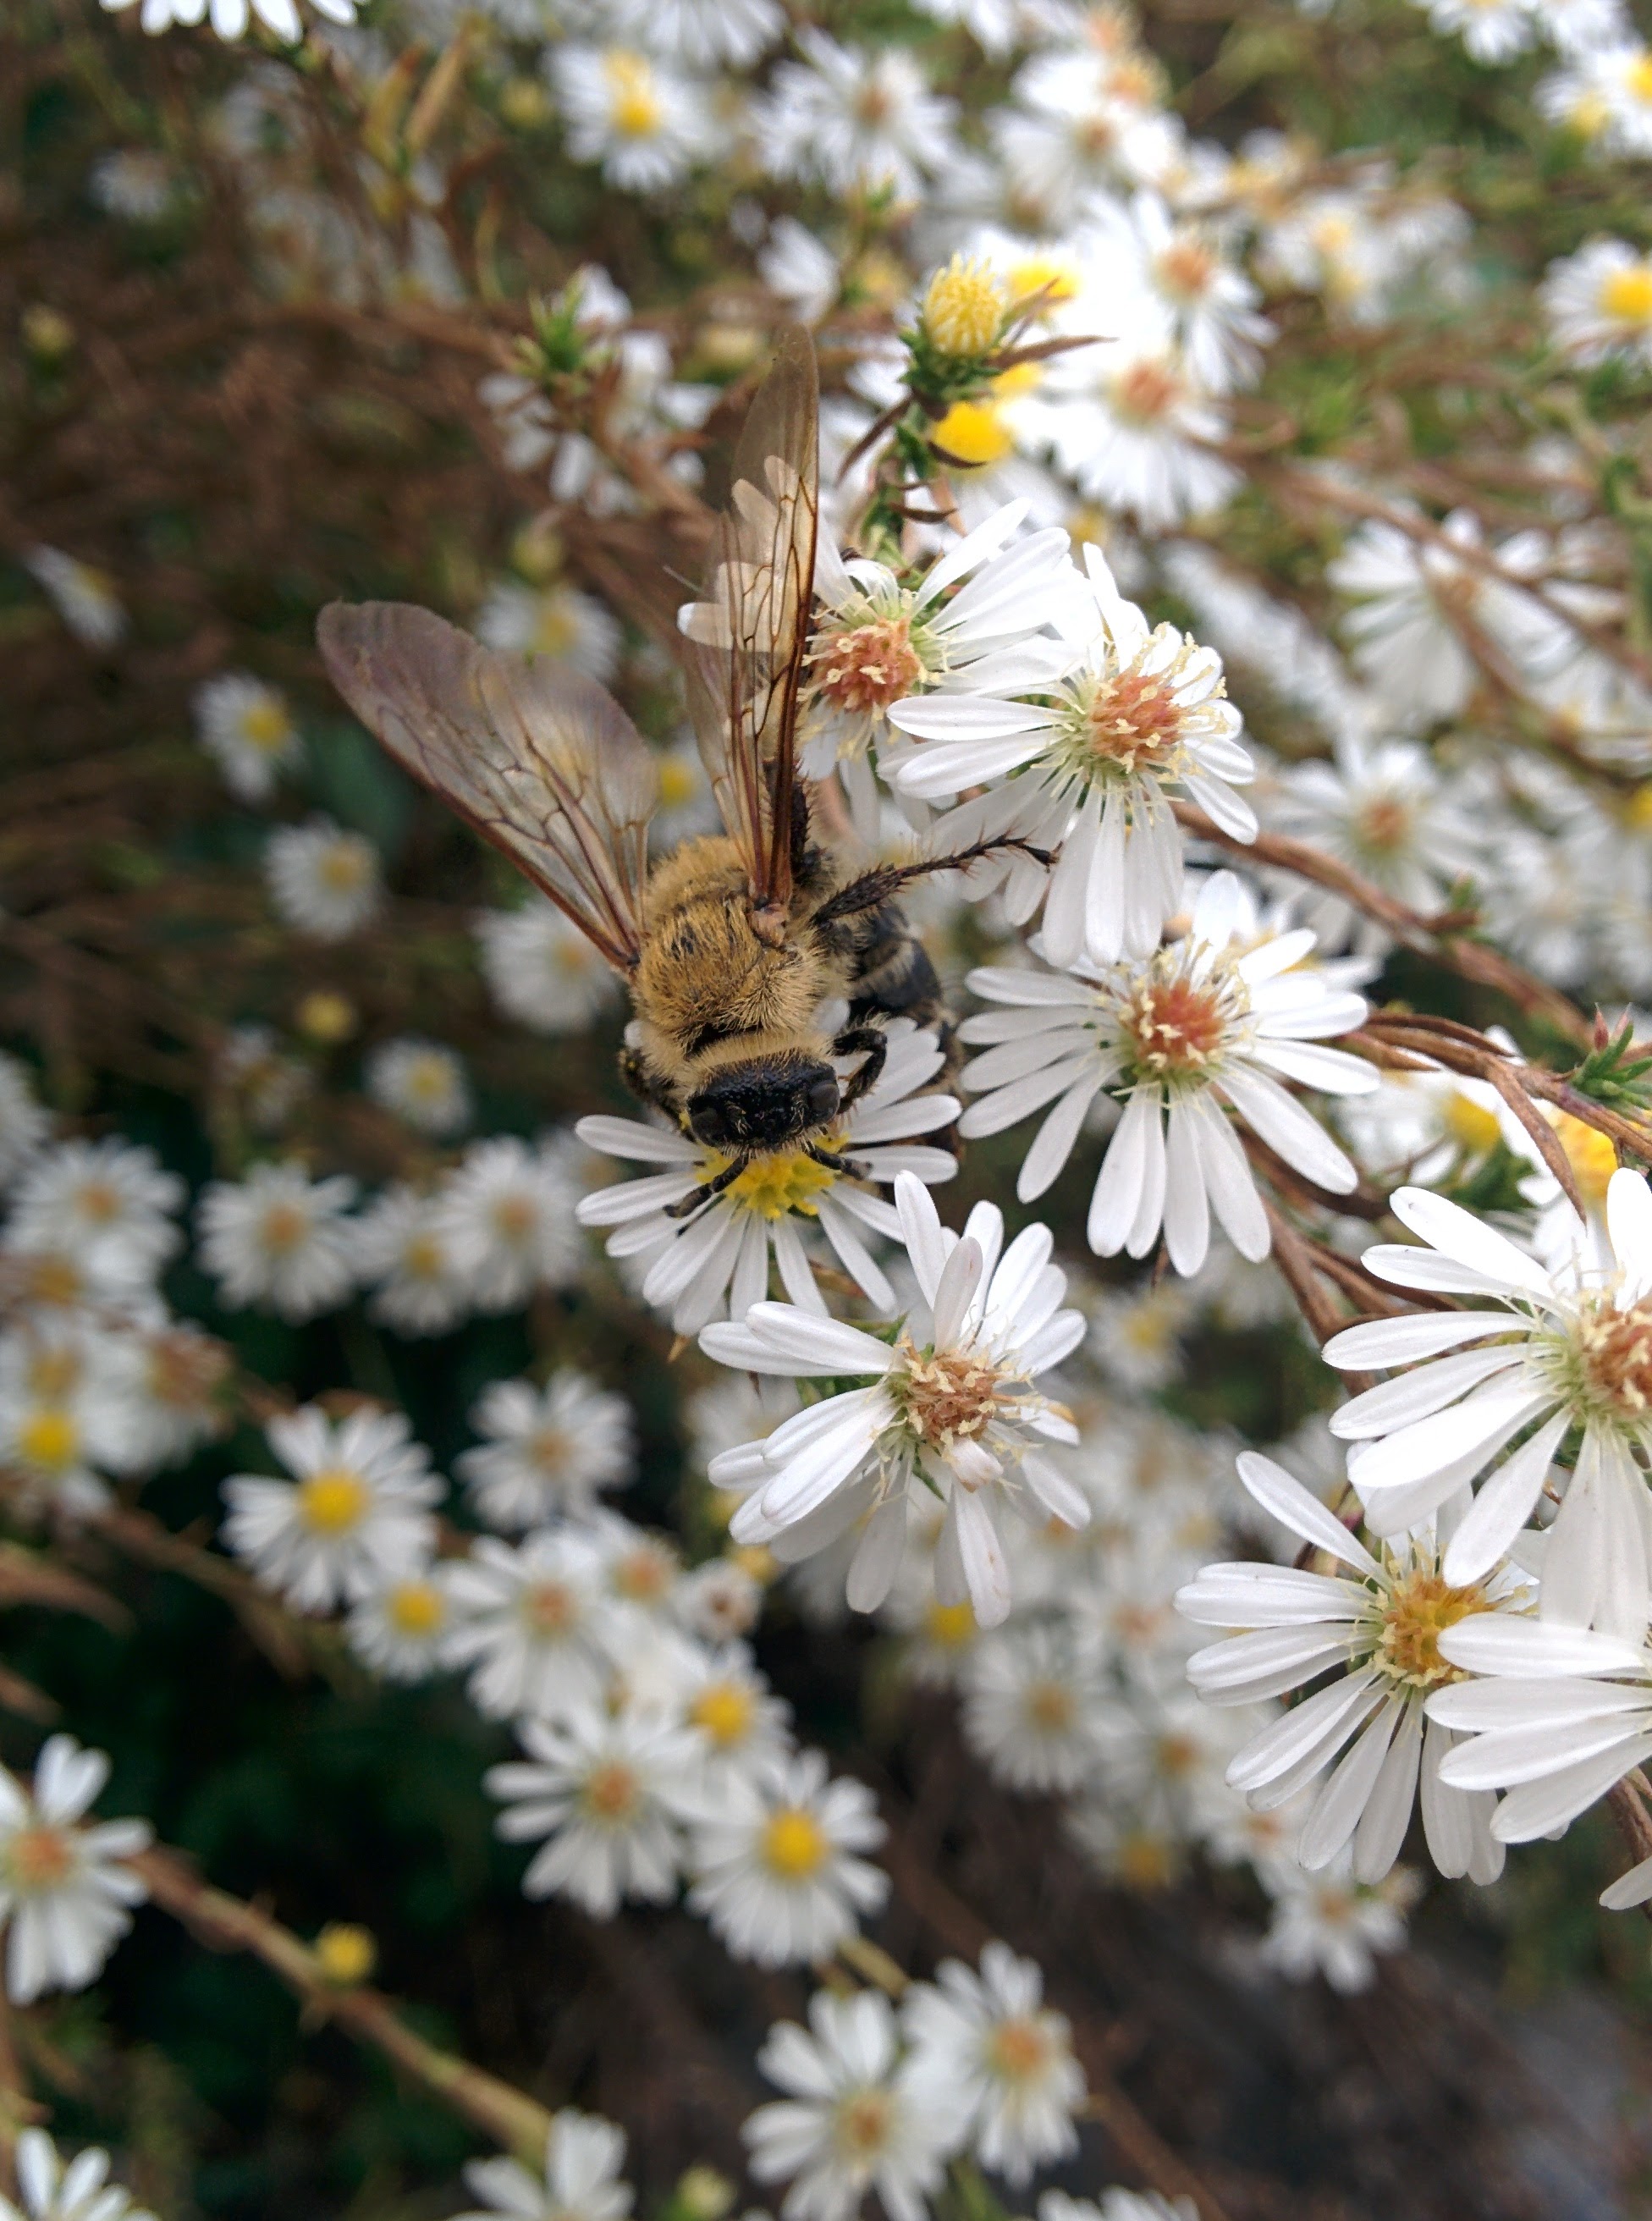 IMG_20151007_152259.jpg 미국쑥부쟁이 꽃을 찾은 대형 벌, 배벌 암컷